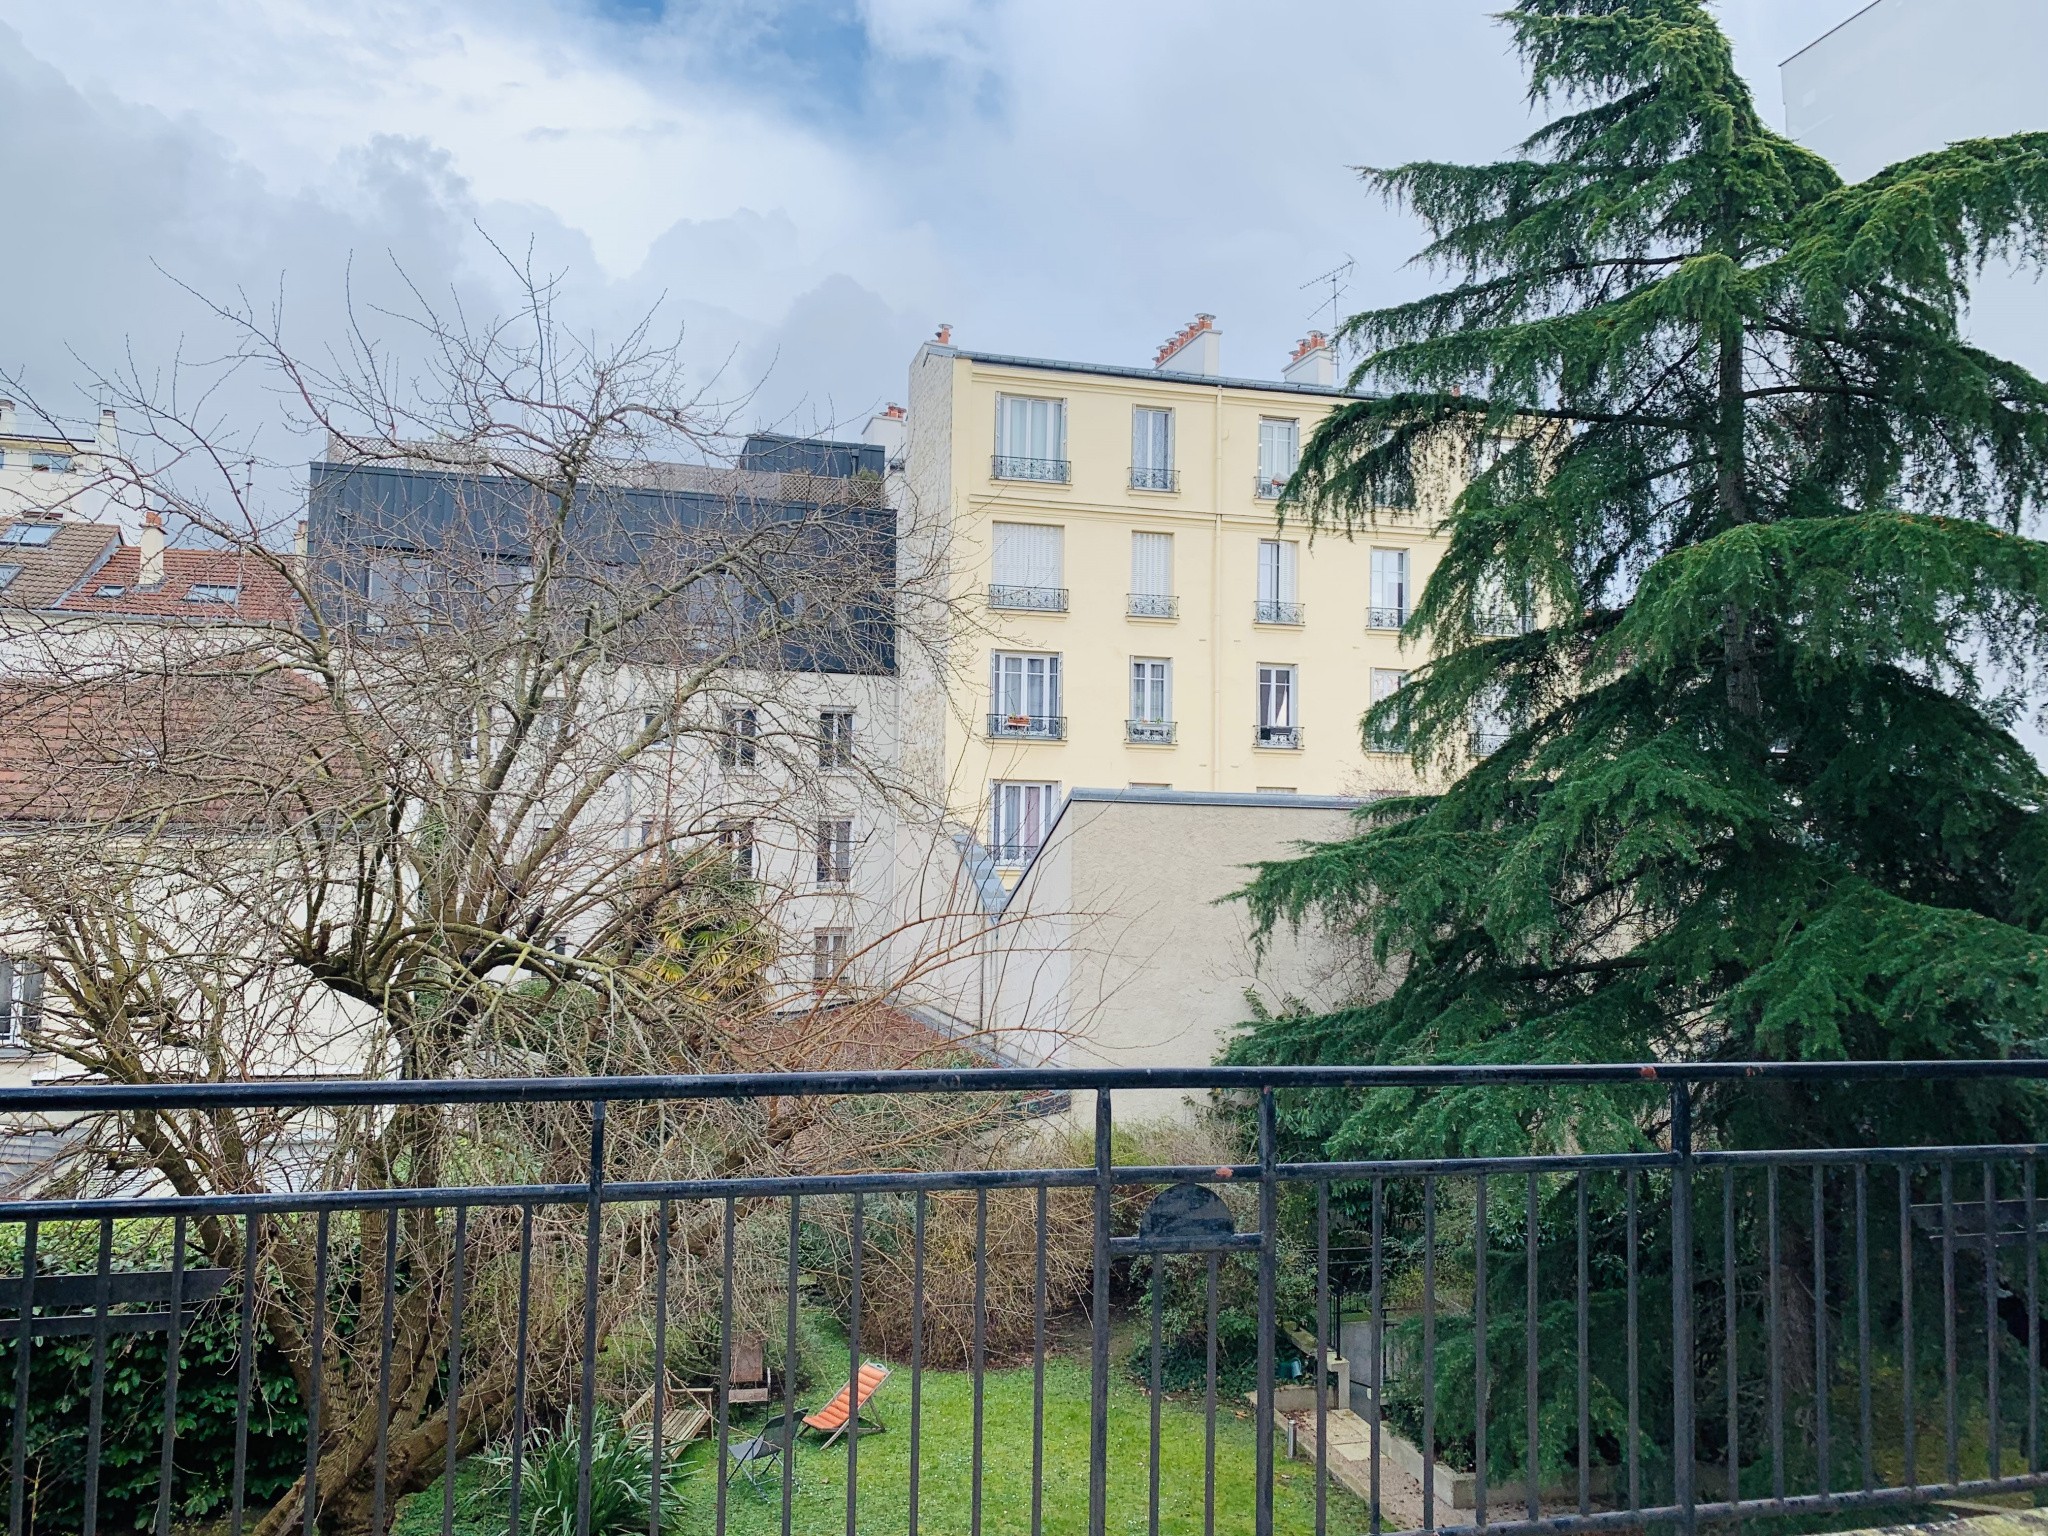 Location Appartement à Issy-les-Moulineaux 3 pièces